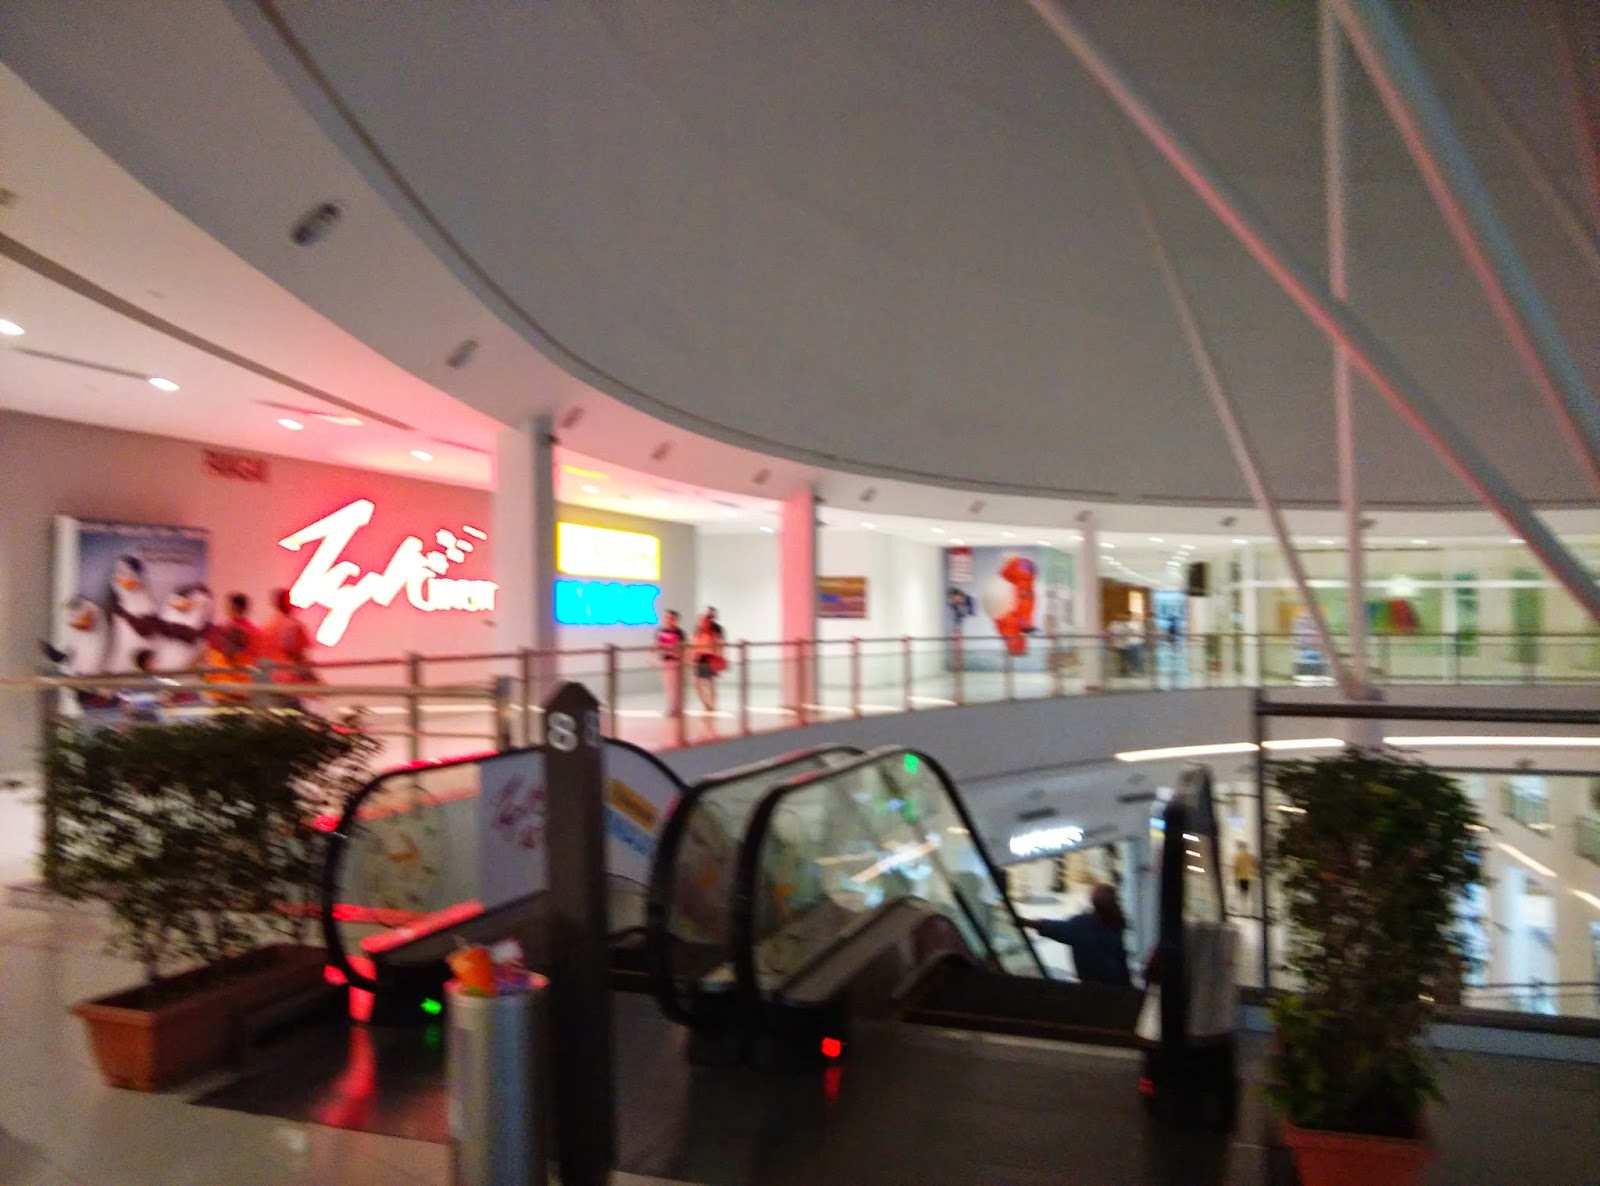 Our Journey Penang Gurney Paragon Mall Tgv Imax Cinema